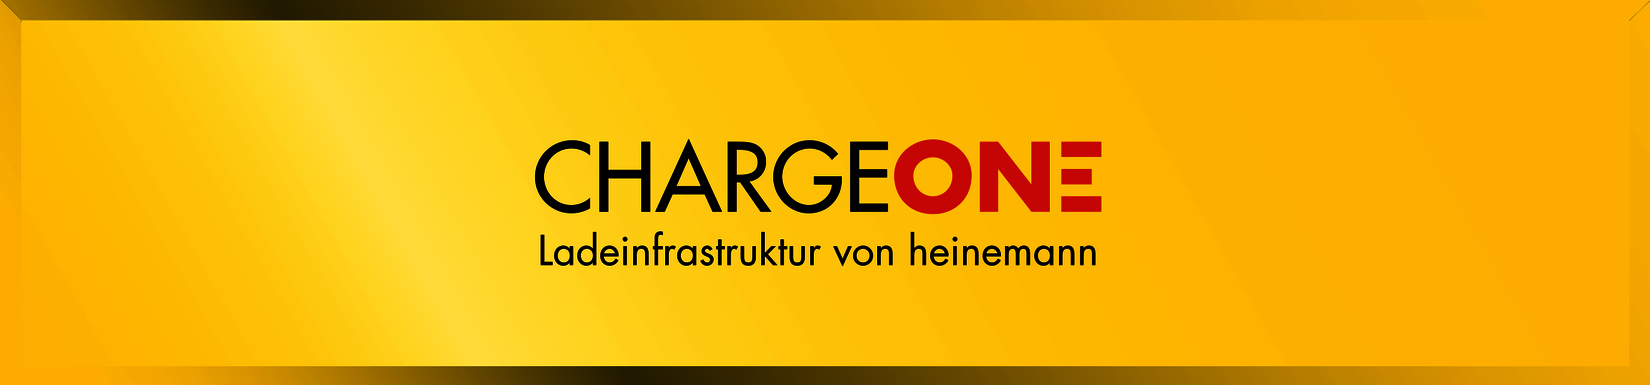 ChargeOne - Die E-Mobility-Spezialisten von heinemann